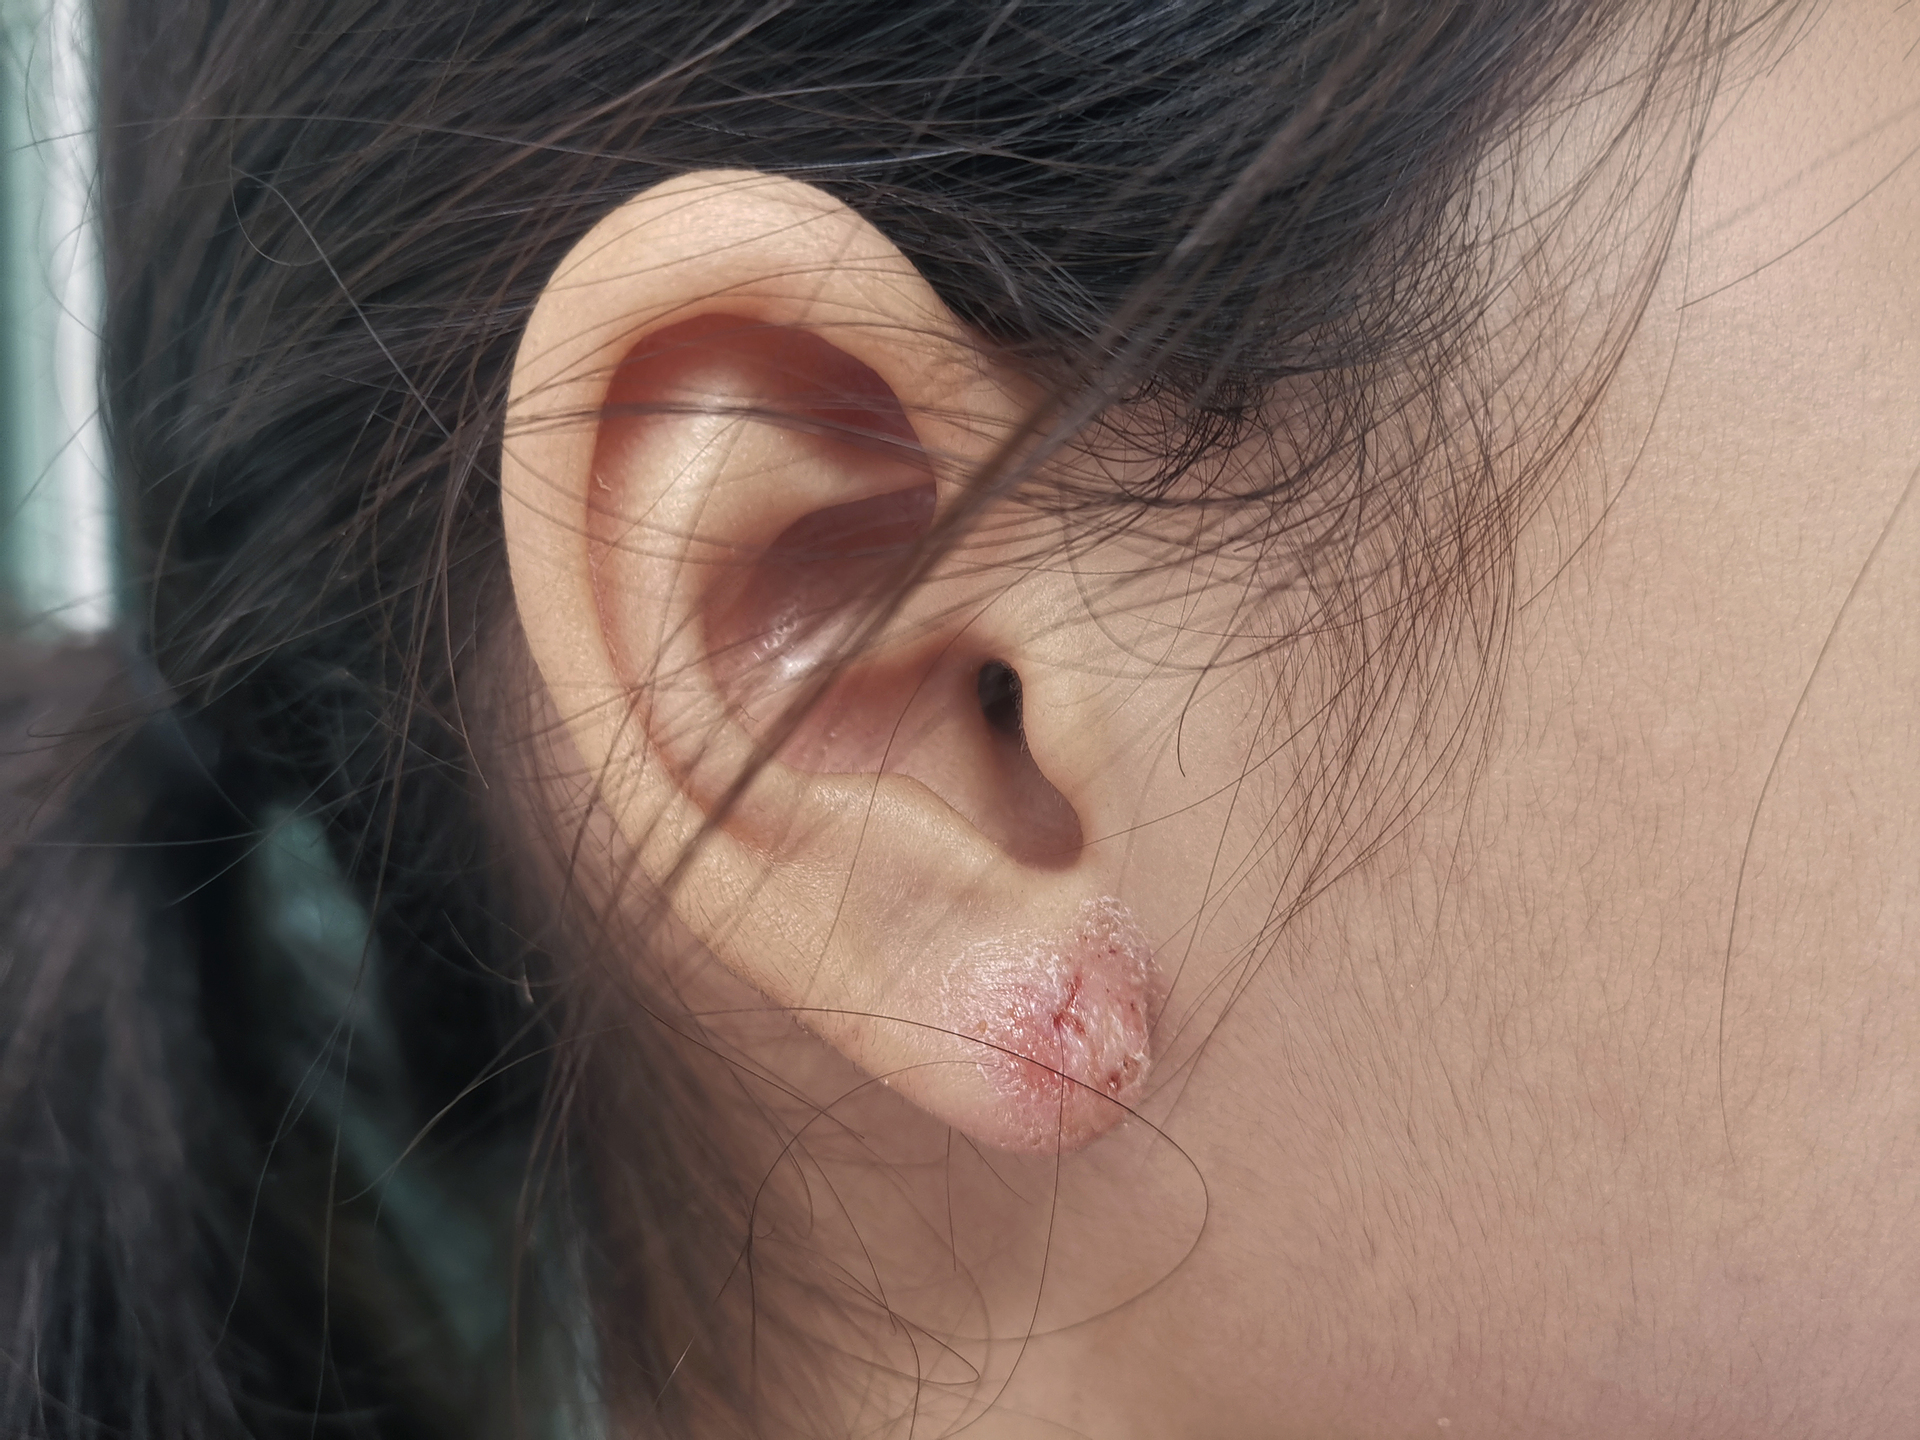 Na tym obrazku widoczna jest kobieta z raną w uchu, która może być wynikiem urazu, zranienia lub innego rodzaju uszkodzenia. Rana jest zauważalna na skórze przewodu słuchowego, powodując ból, zaczerwienienie i możliwe krwawienie. W przypadku takiej rany zaleca się skonsultowanie z lekarzem w celu odpowiedniego leczenia i zapobieżenia ewentualnym powikłaniom